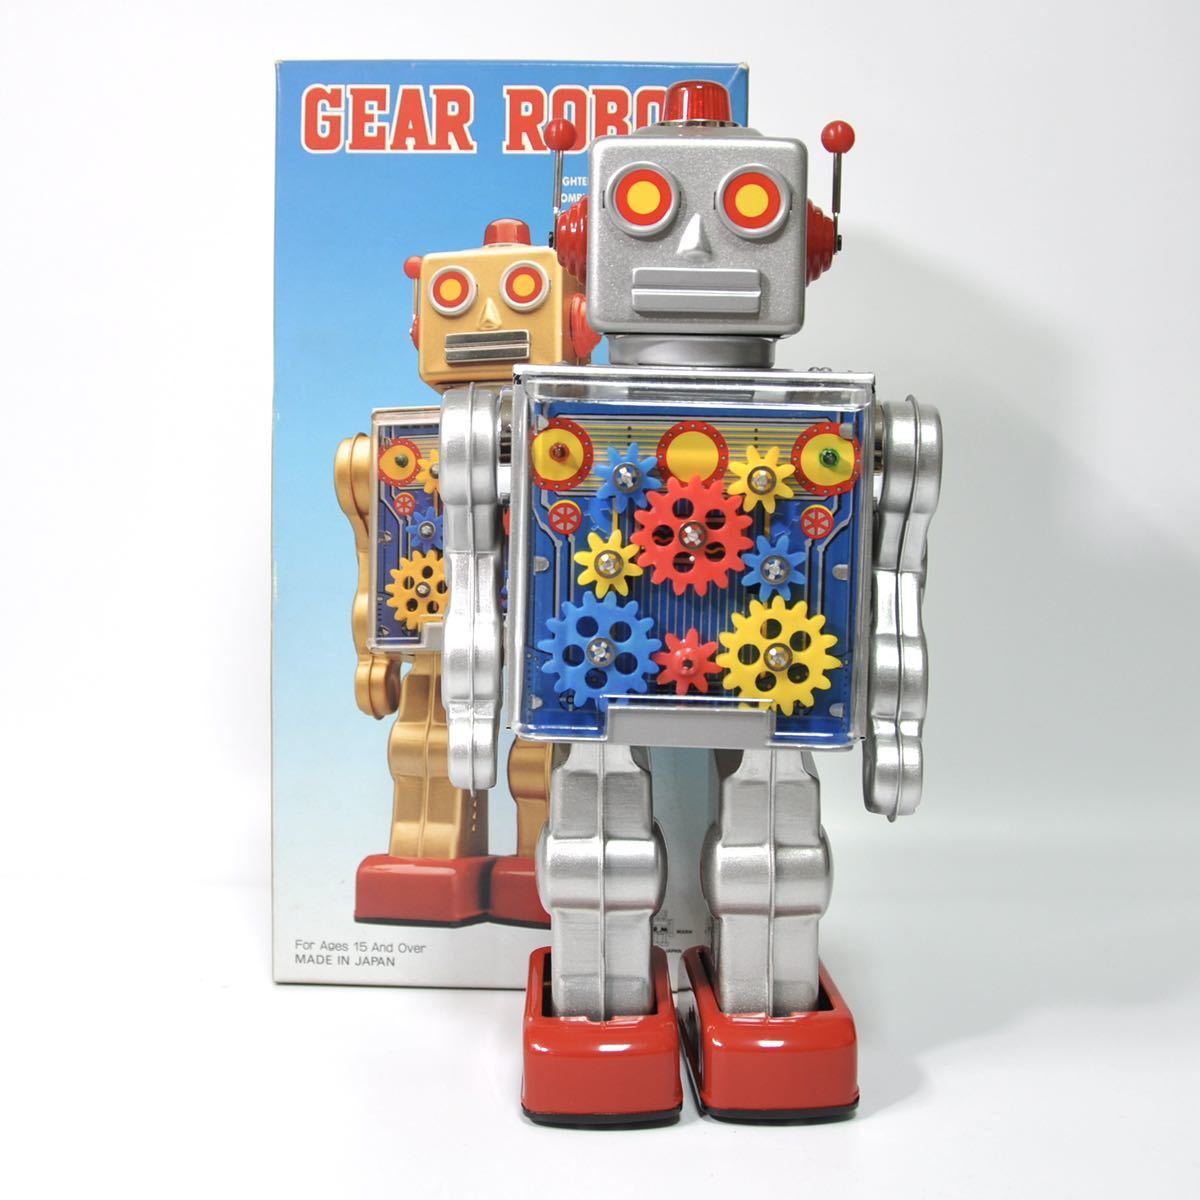 メタルハウスブリキロボット GEAR ROBOT ❤純正ショッピング❤ hbrealty.in